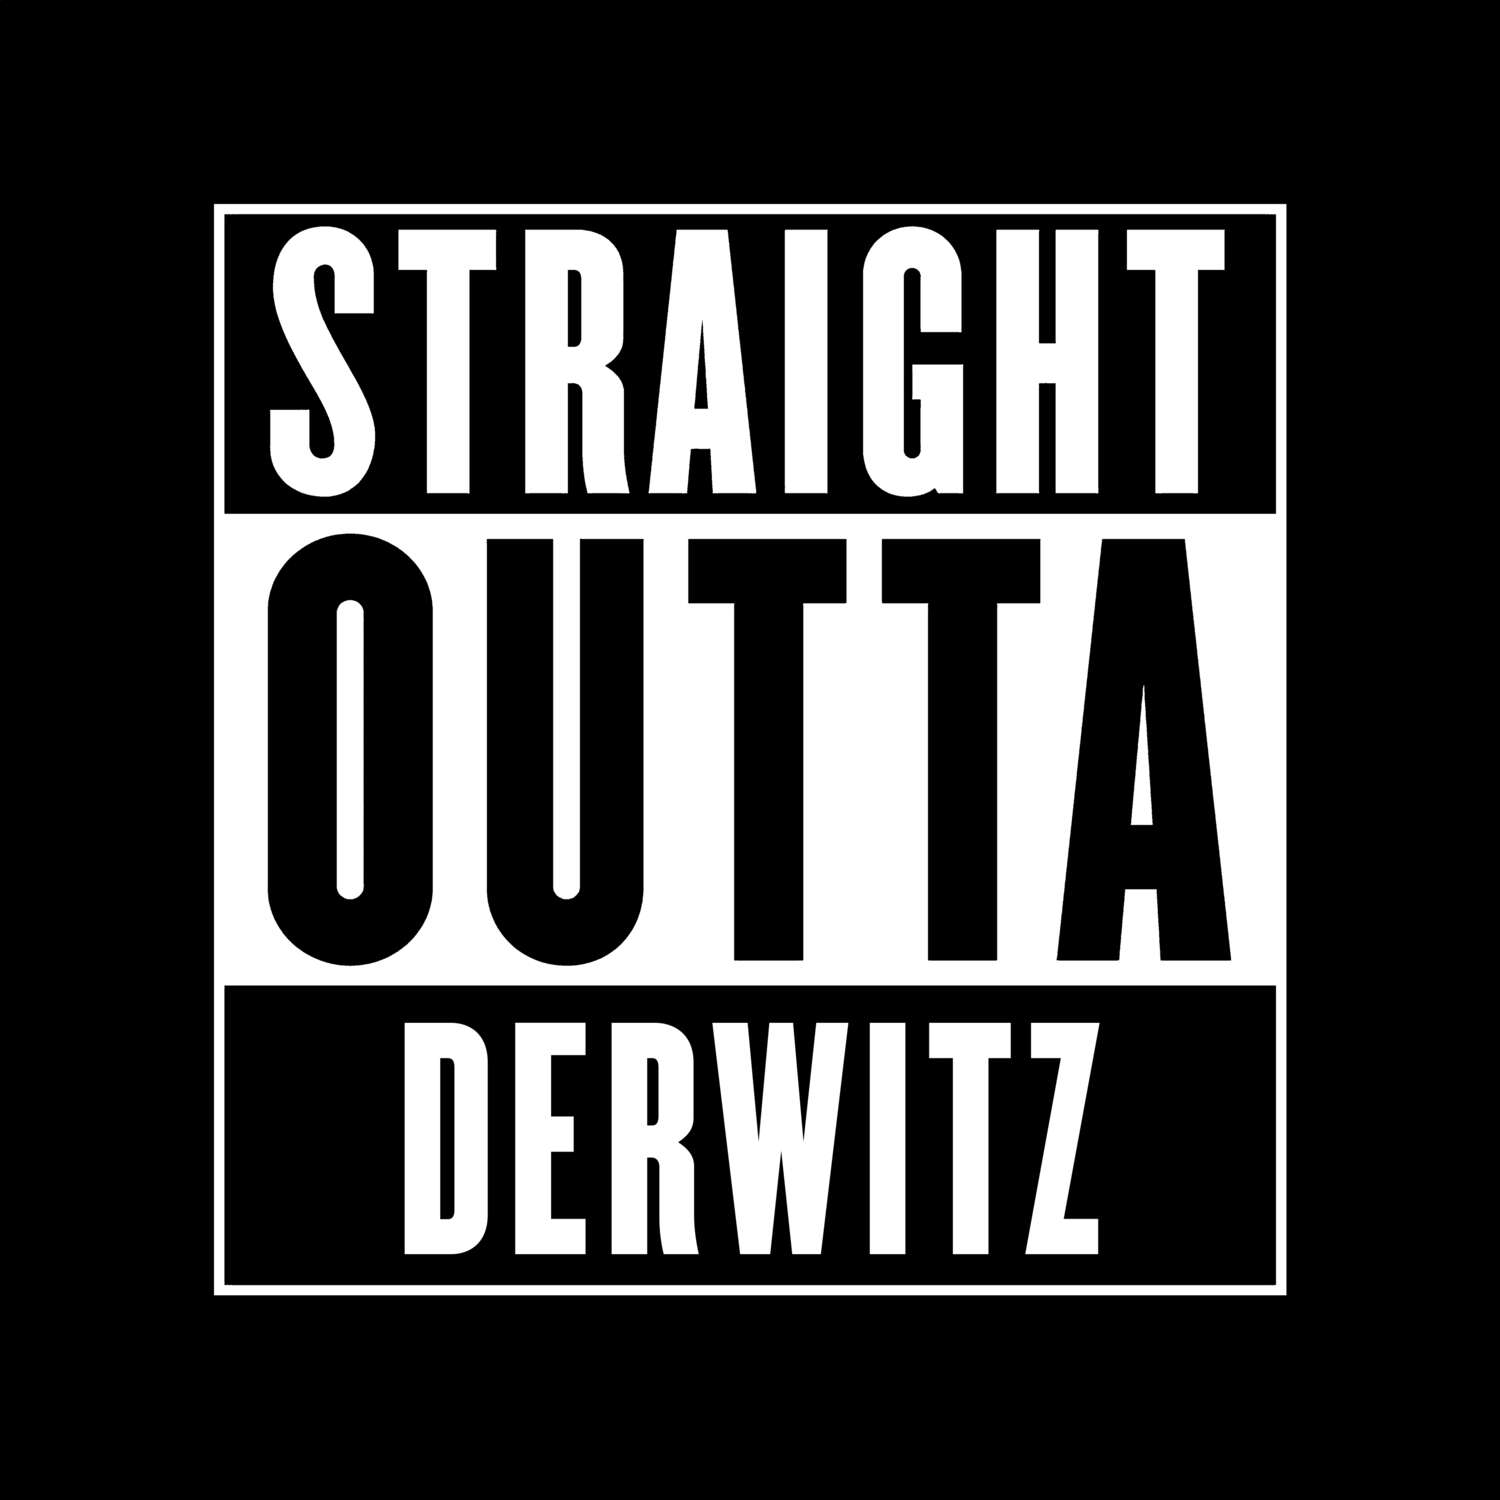 Derwitz T-Shirt »Straight Outta«